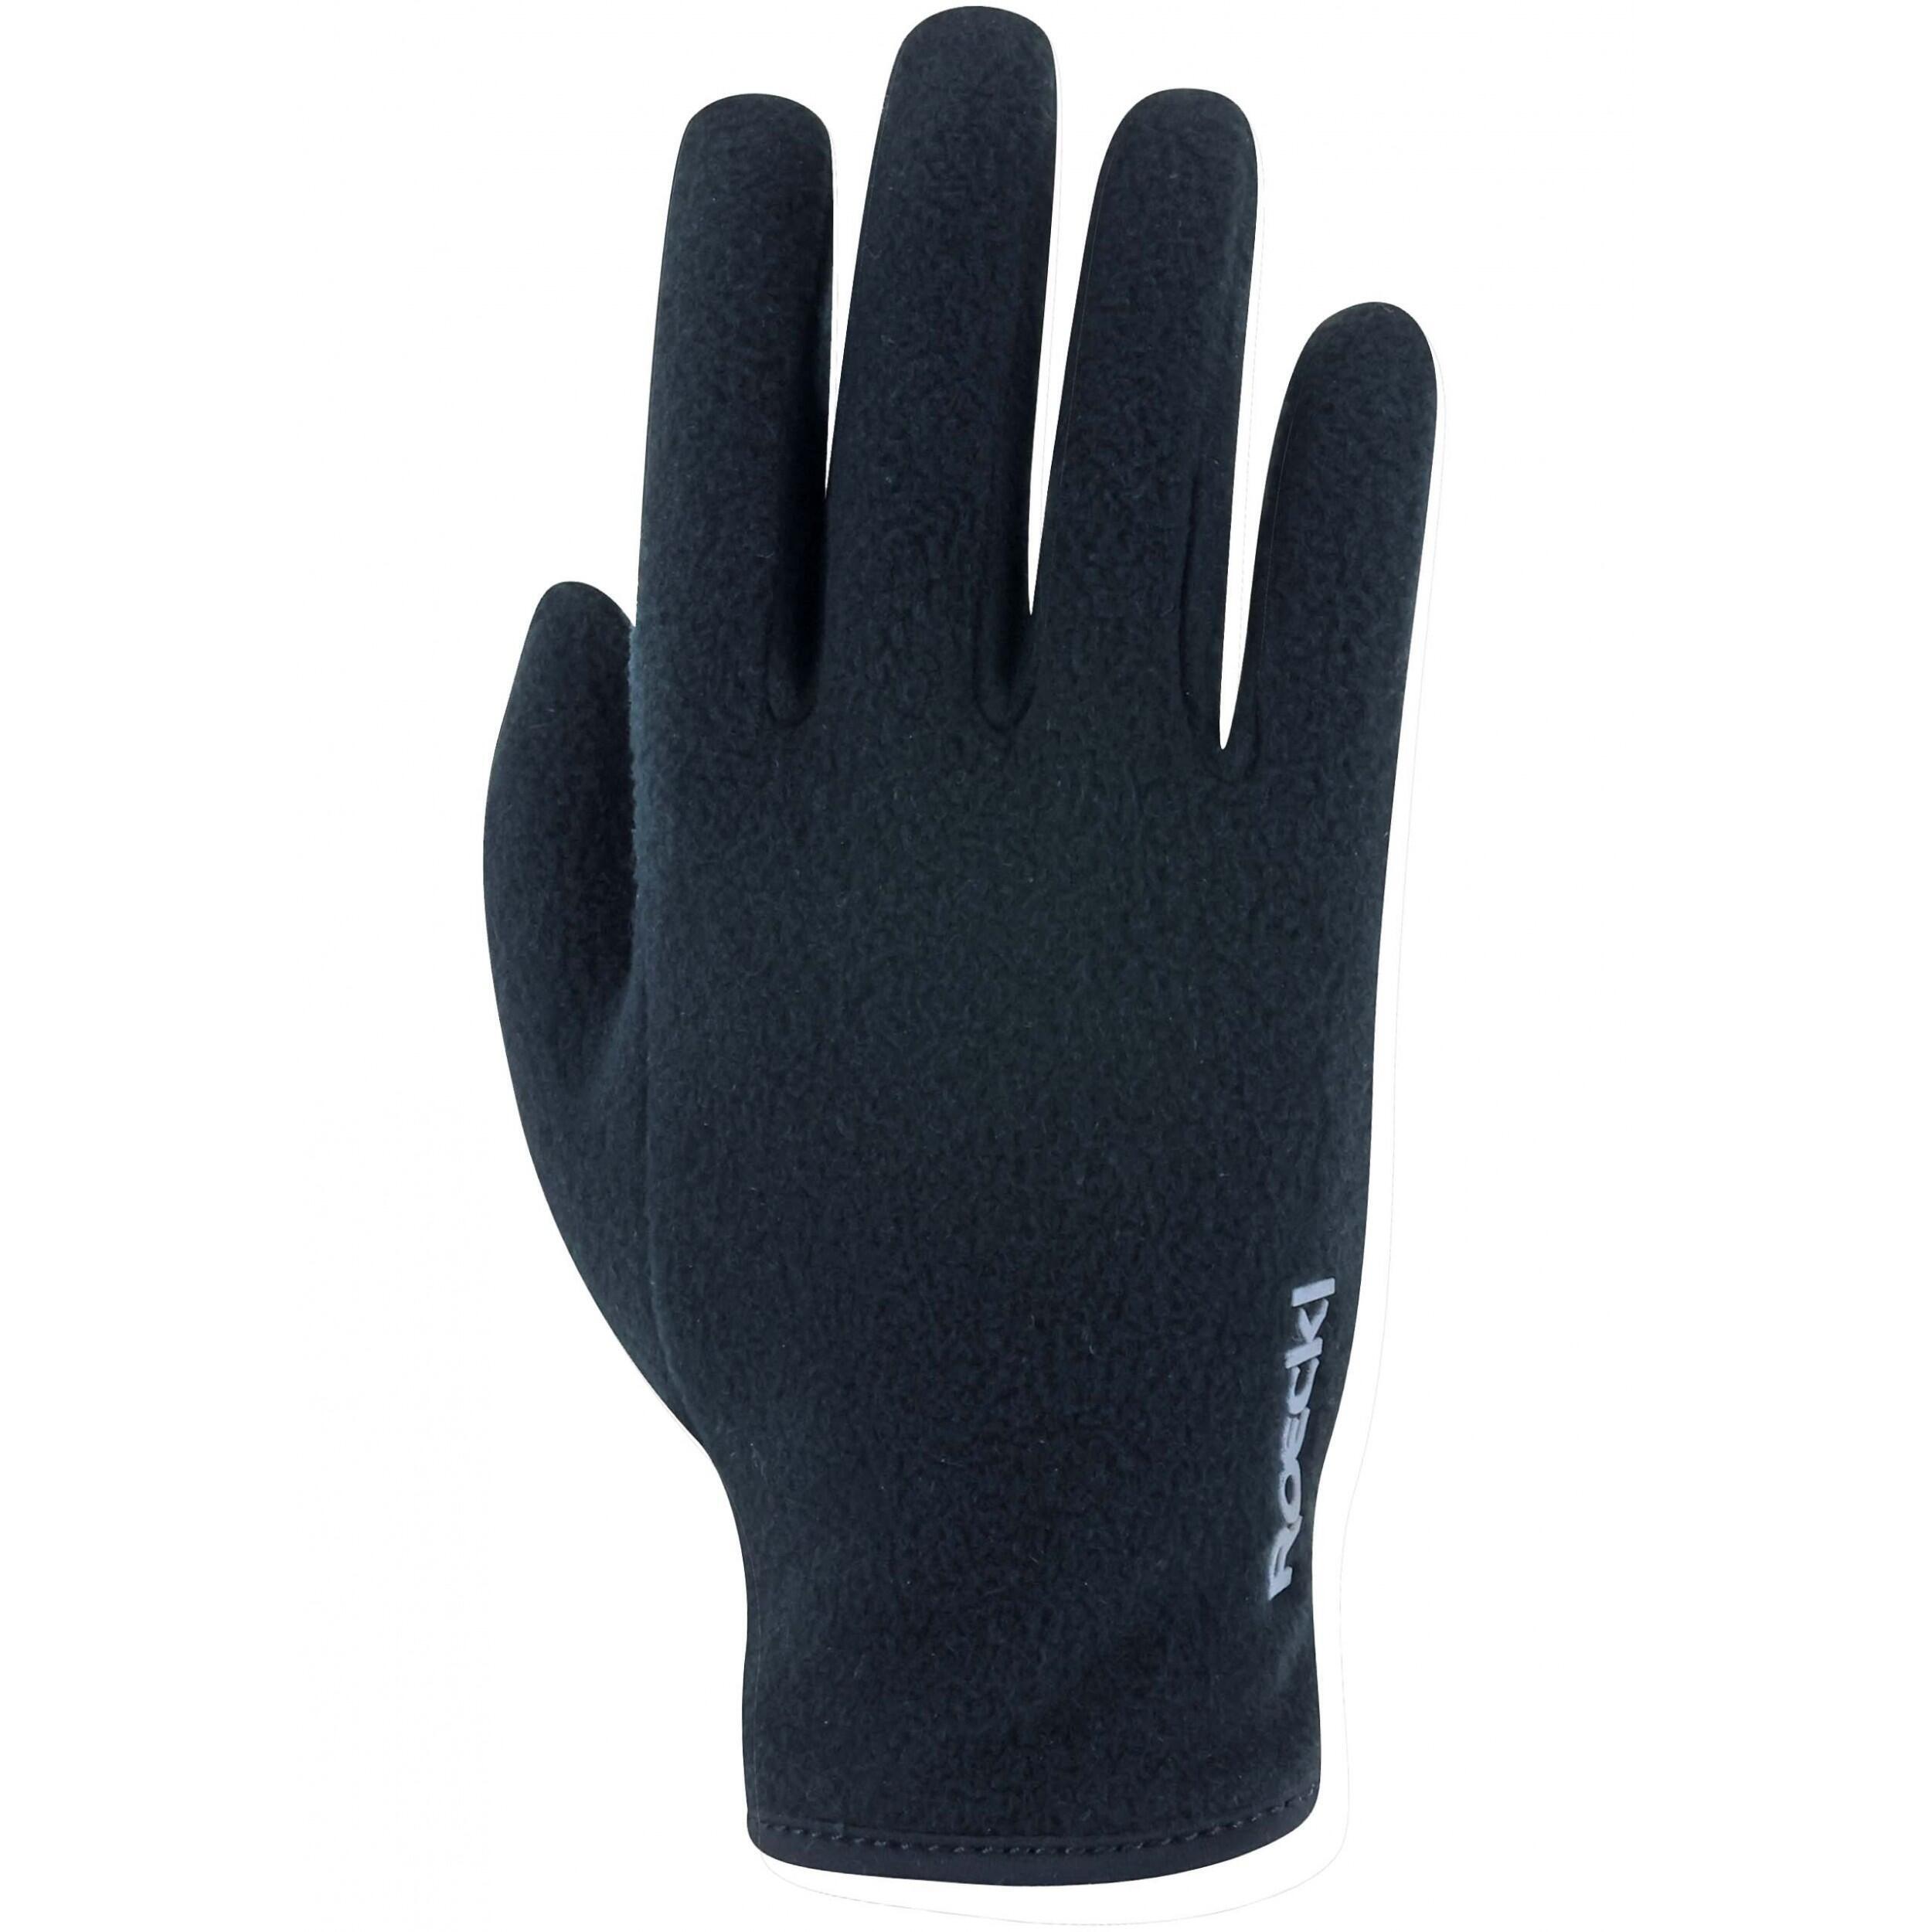 Перчатки Roeckl детские для верховой езды, черный перчатки для верховой езды детские дышащие перчатки для верховой езды для мужчин и женщин для детей для верховой езды снаряжение для гон